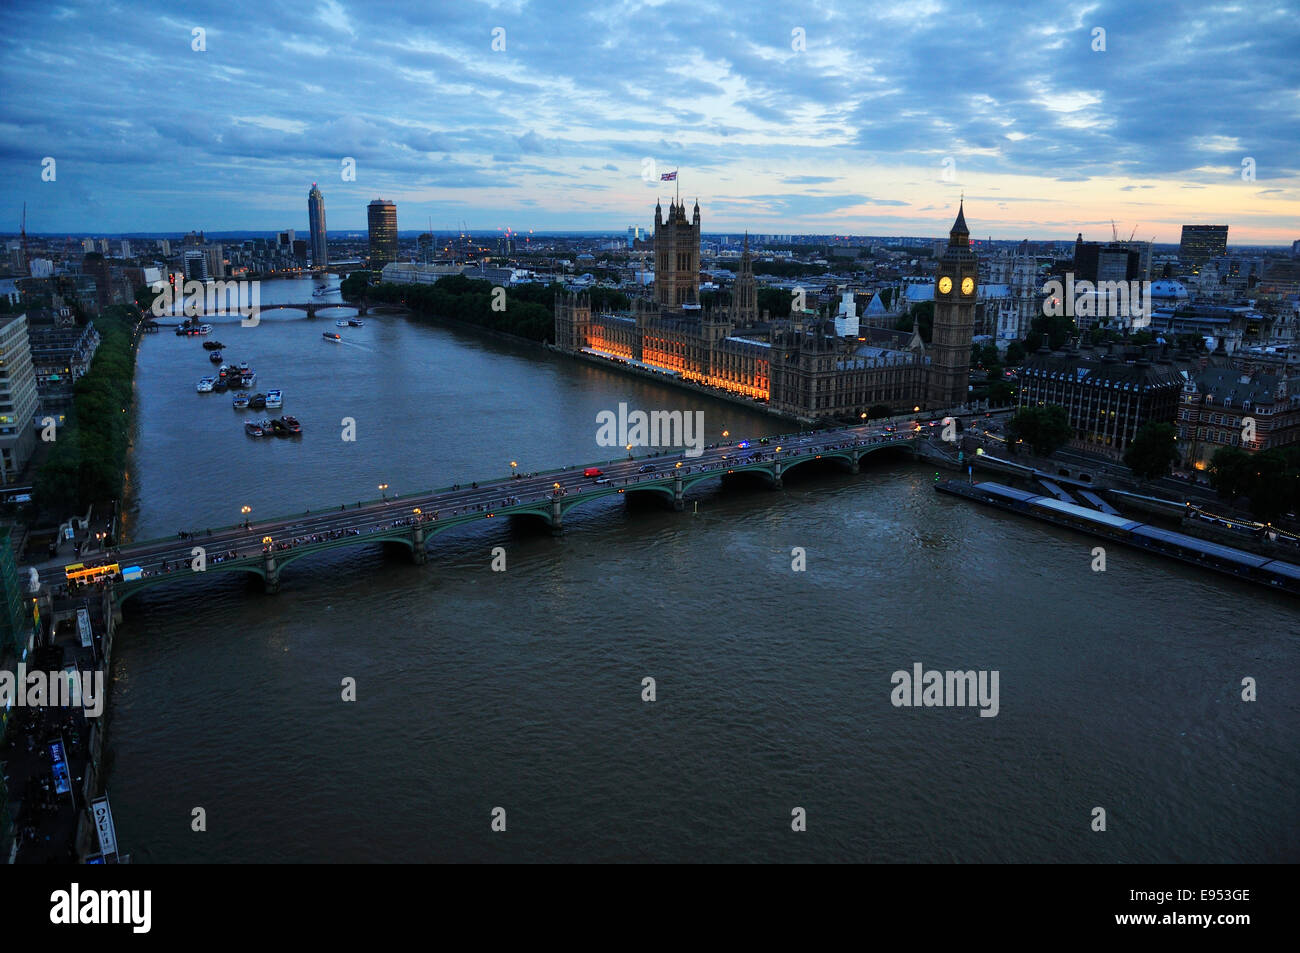 Vue depuis le London Eye de Westminster Bridge, chambres du Parlement, et Elizabeth Tower Clock Tower, London, England Banque D'Images